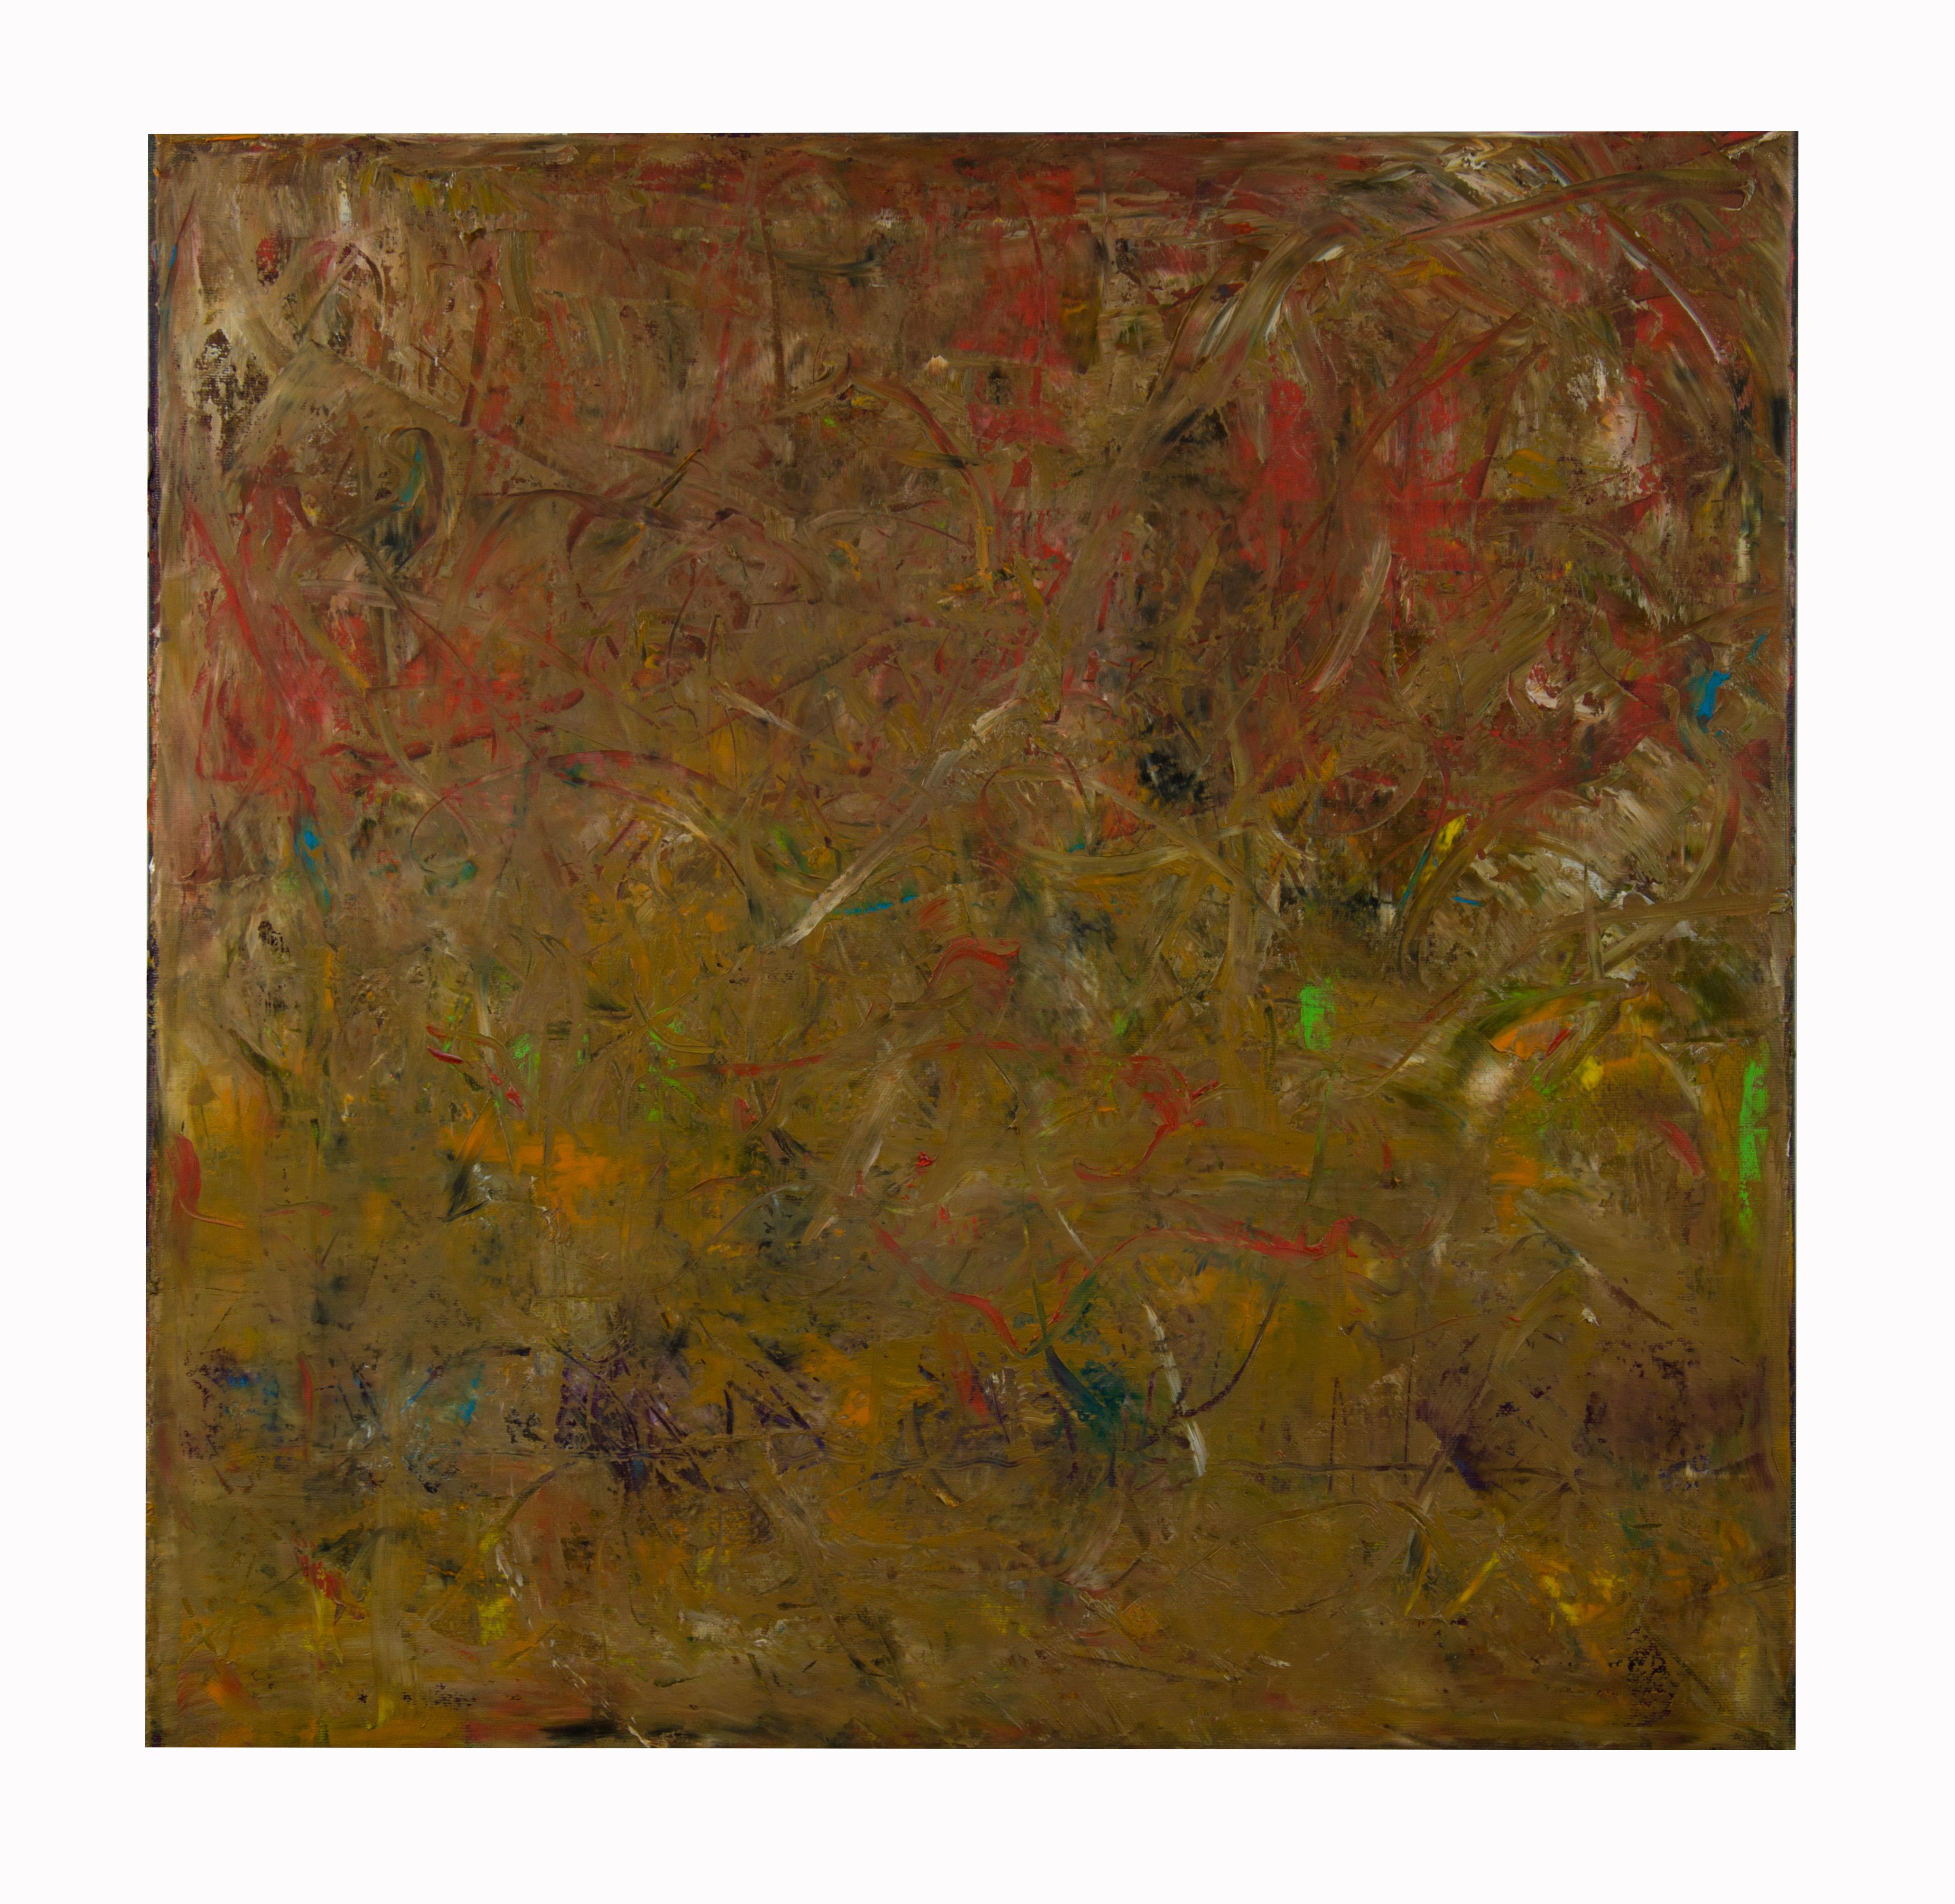 Arrhythmische Komposition 8 -  Zeitgenössisches expressionistisches abstraktes Ölgemälde